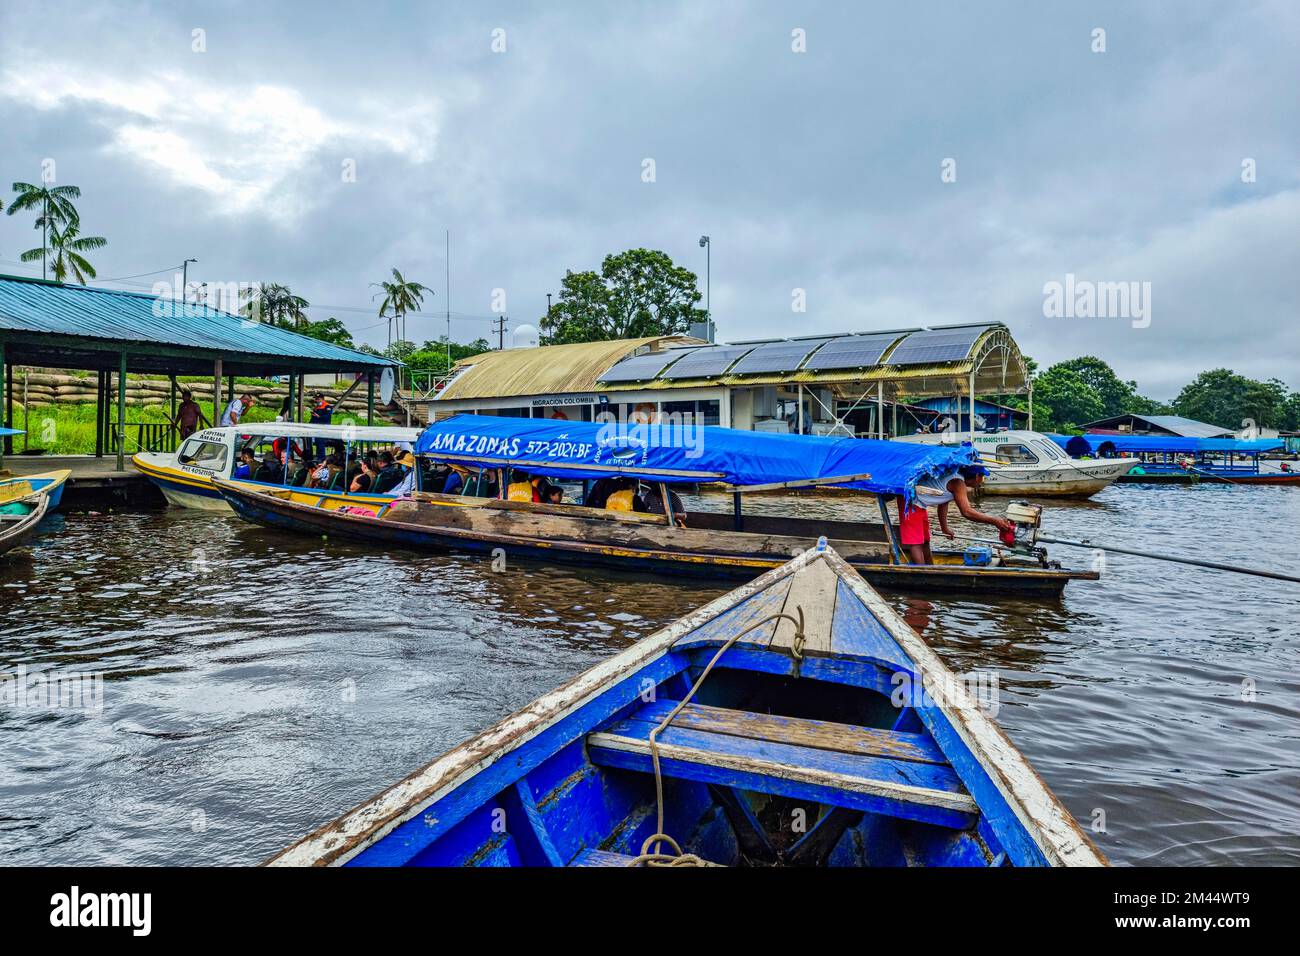 Boattour sur l'Amazonie, Leticia, Colombie Banque D'Images